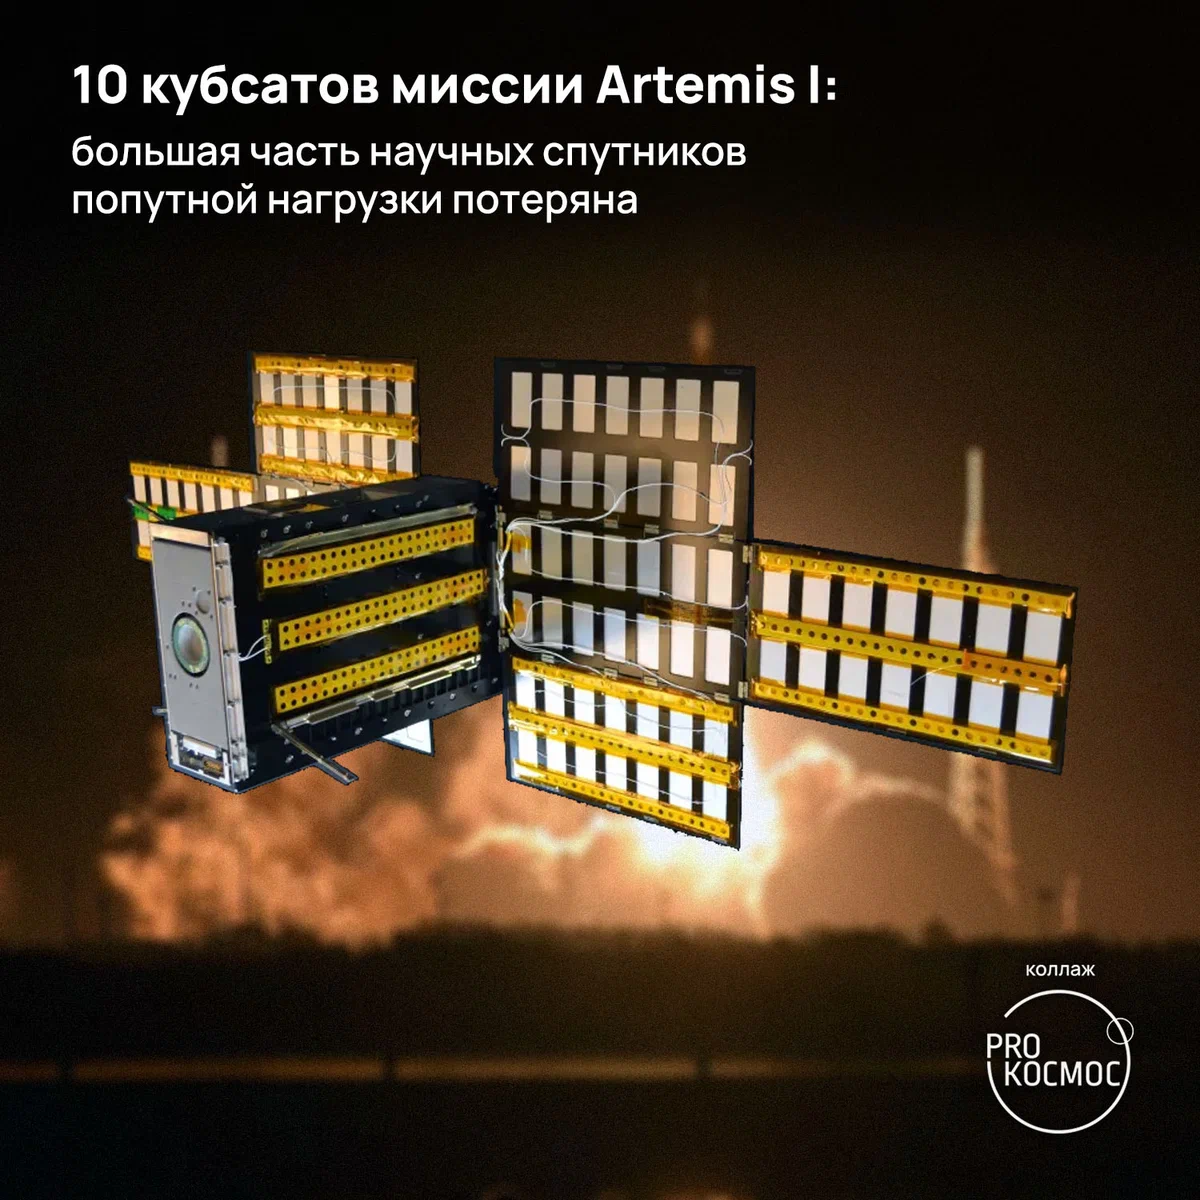 10 кубсатов миссии Artemis I: большая часть научных спутников попутной нагрузки потеряна height=1200px width=1200px